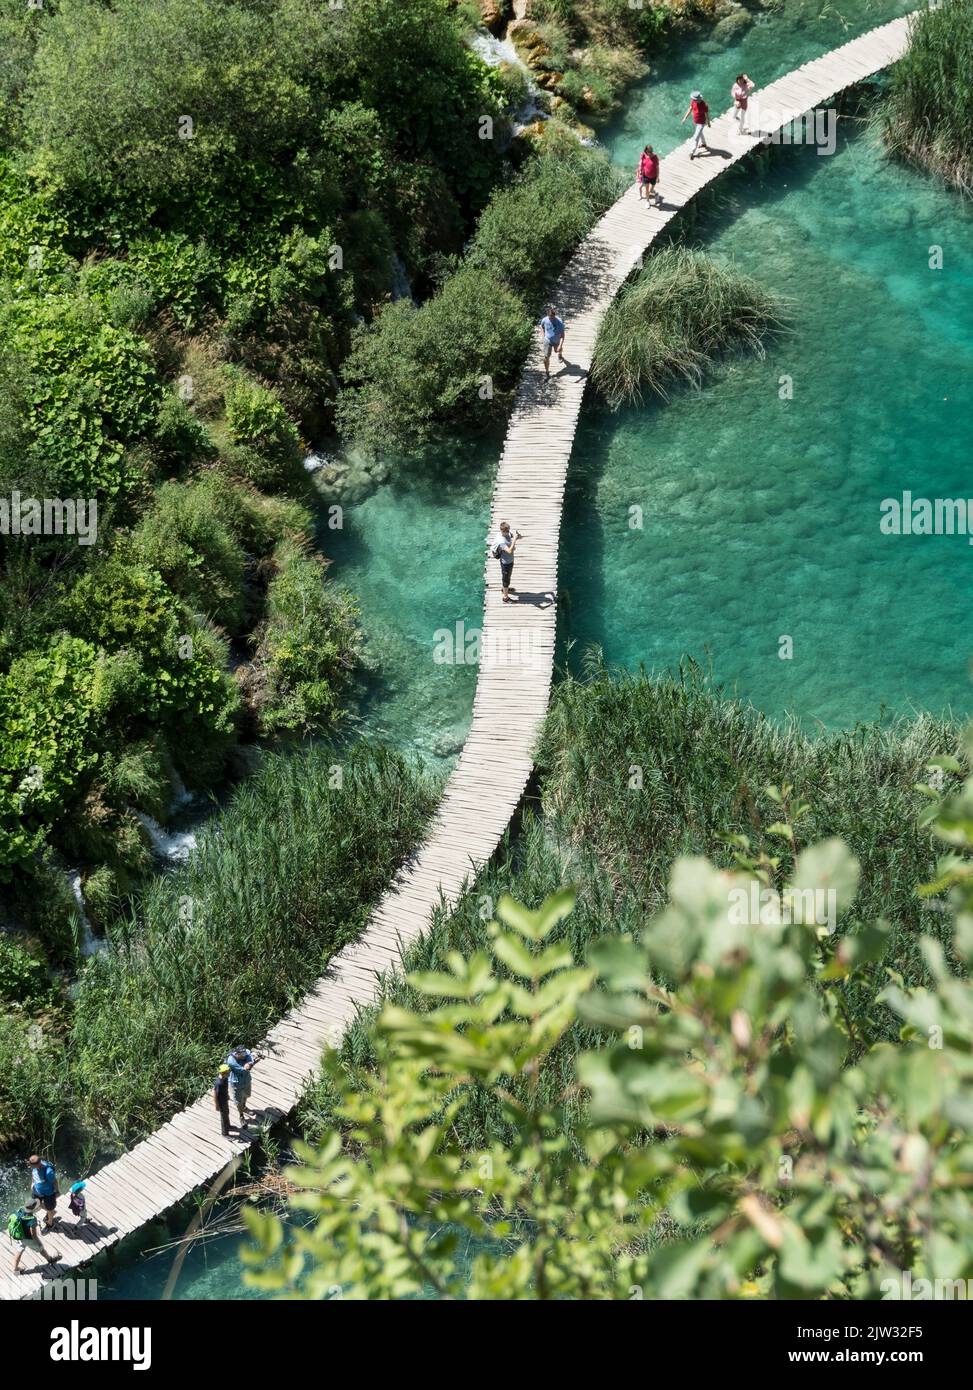 Luftaufnahme von Touristen, die auf einem Spaziergang über einen der vielen Pools und Seen des Nationalparks Plitvicer Seen, Kroatien, Europa, wandern. Stockfoto